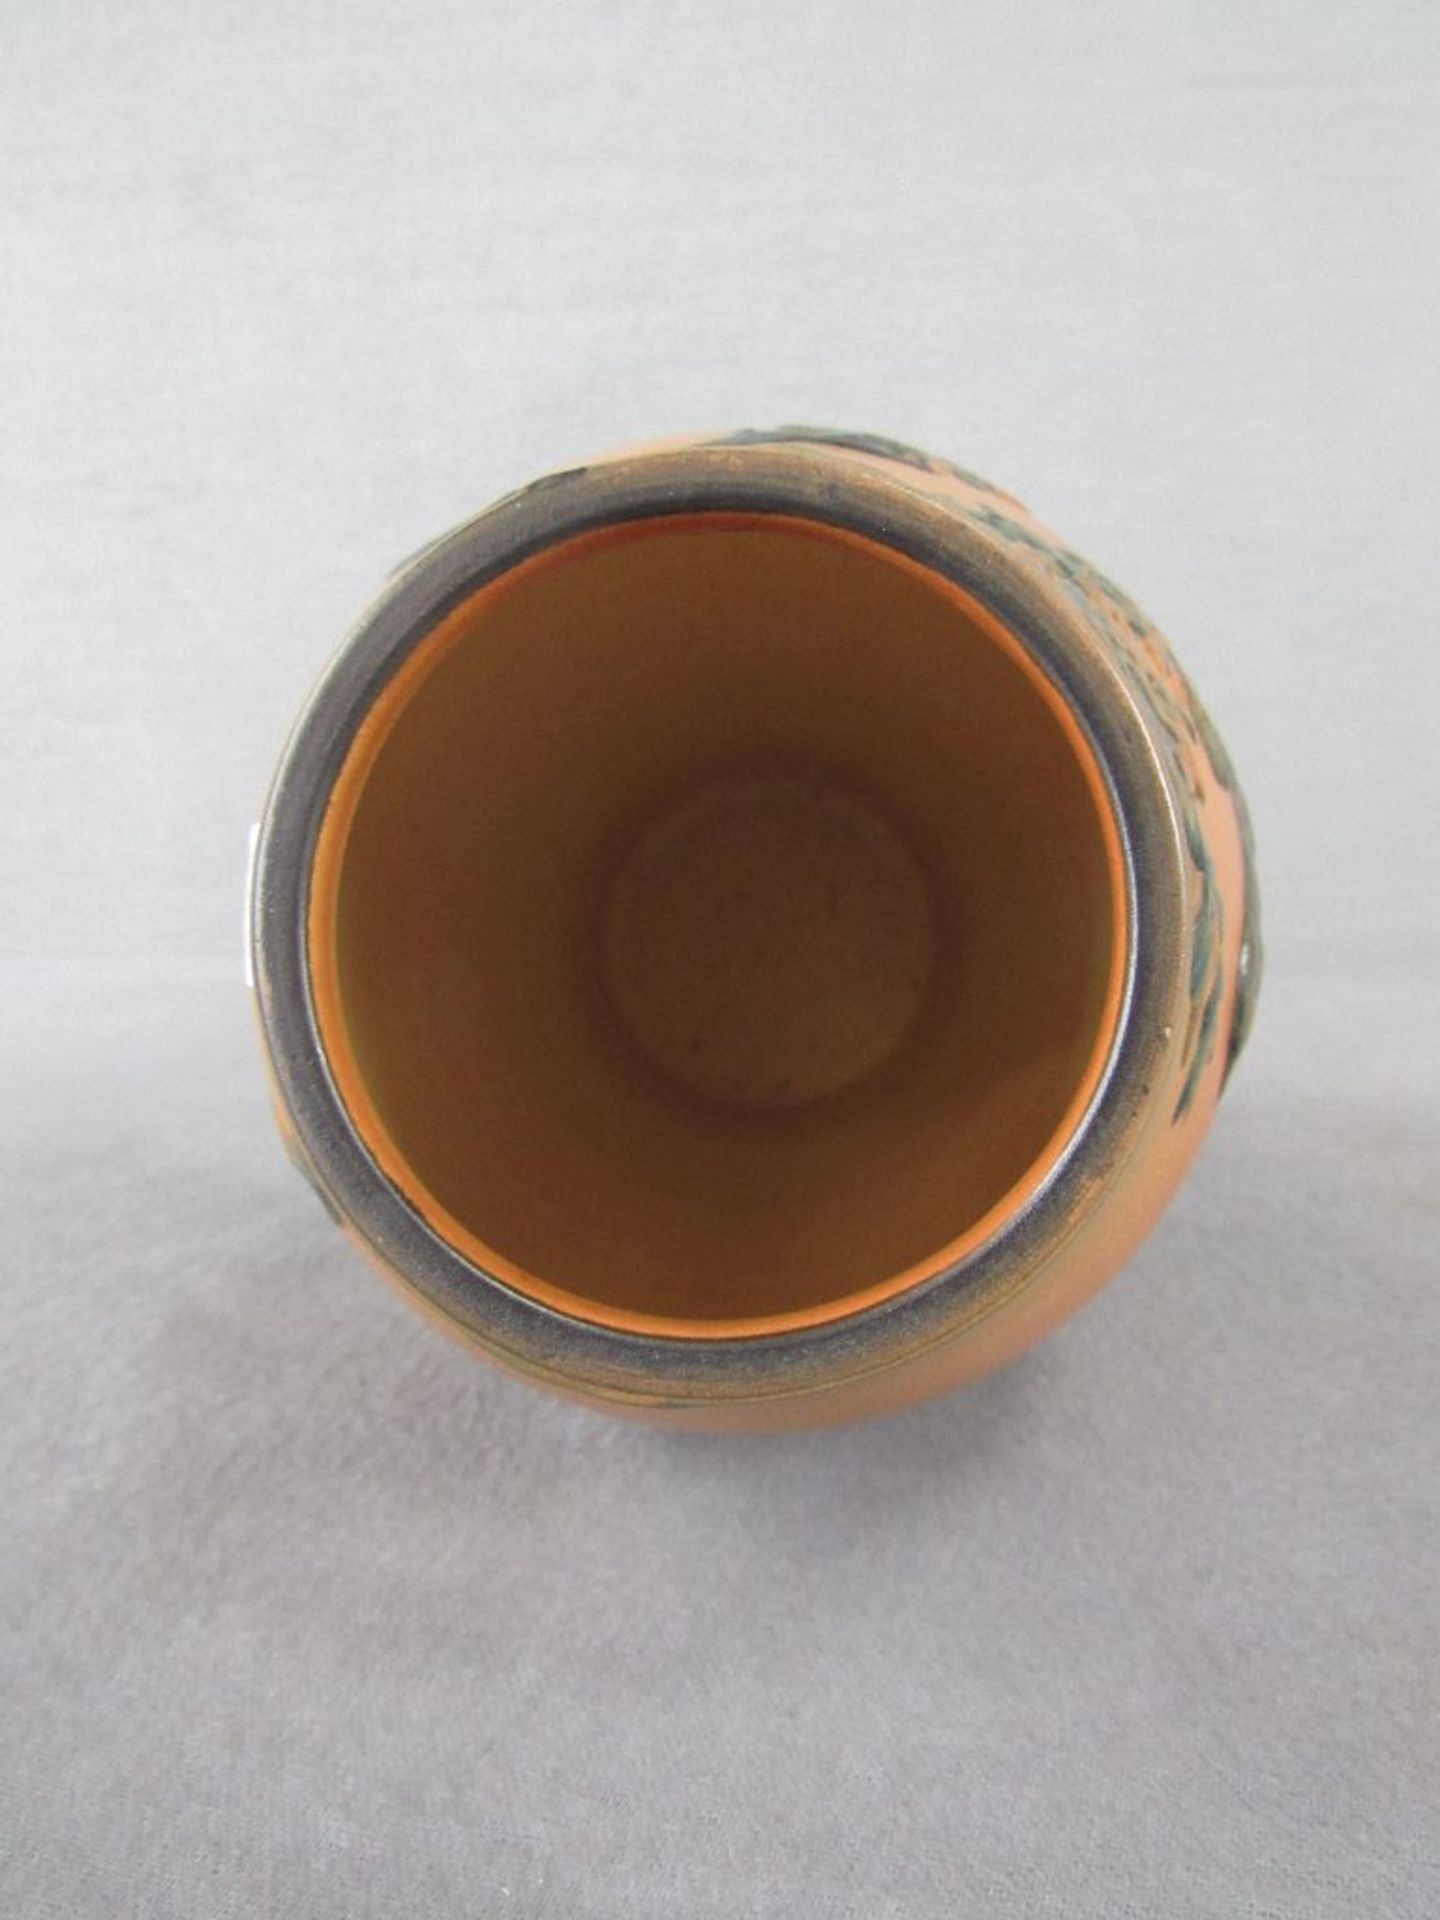 Vase Keramik Jugendstil Enke Ypsen Dänemark gemarkt 22cm hoch am Stand leicht gechipt - Image 4 of 6